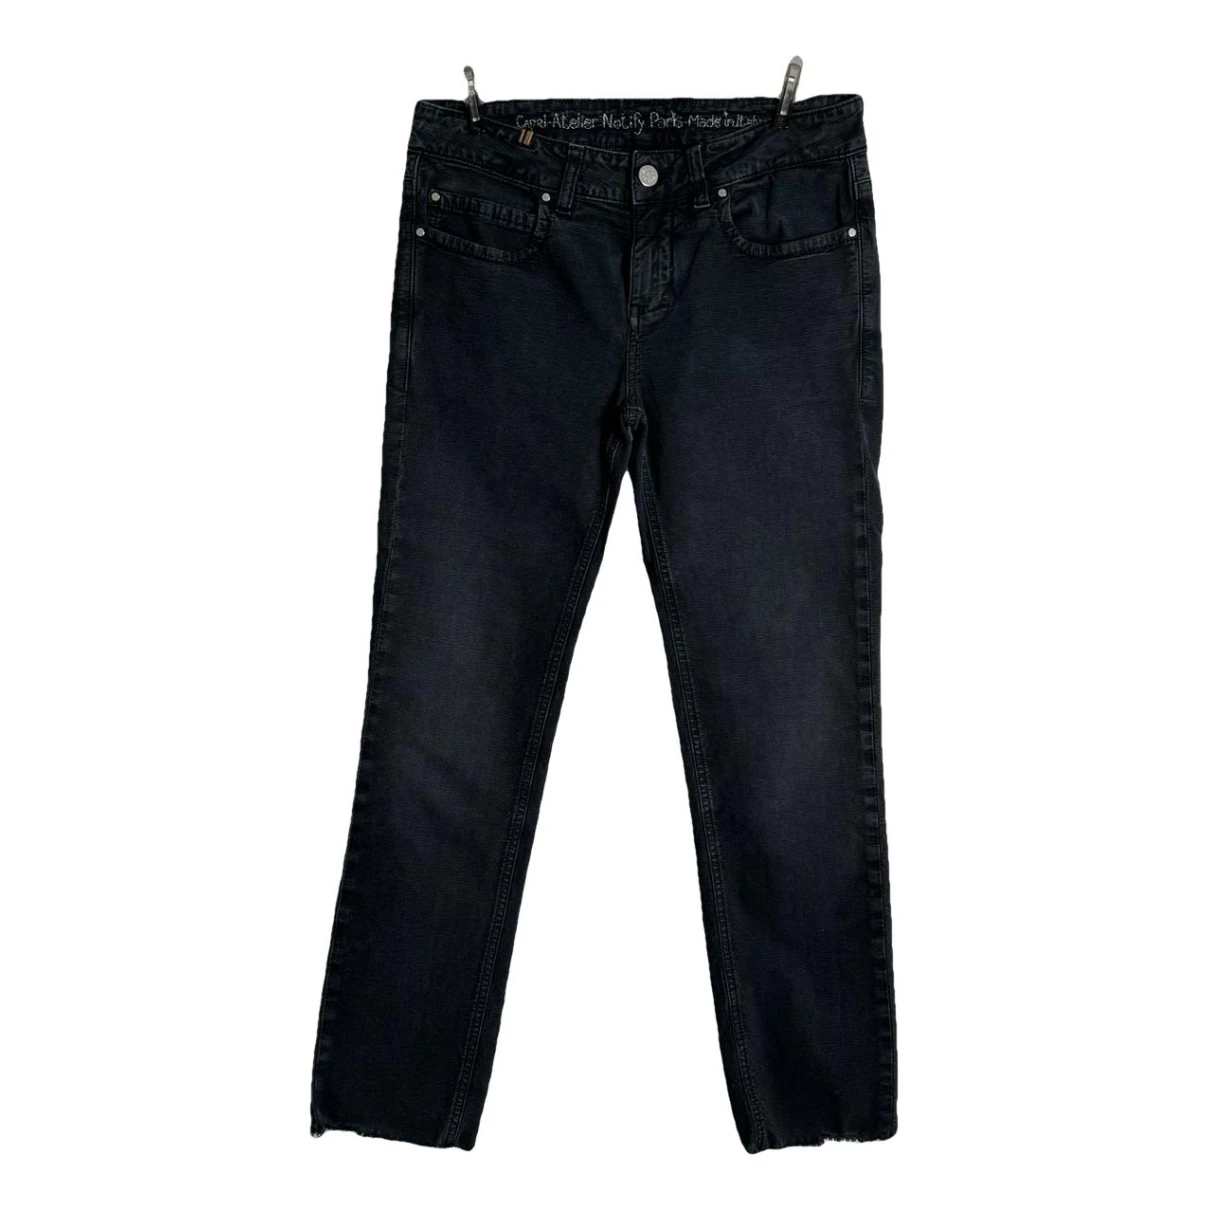 Pre-owned Notify Slim Jeans In Black